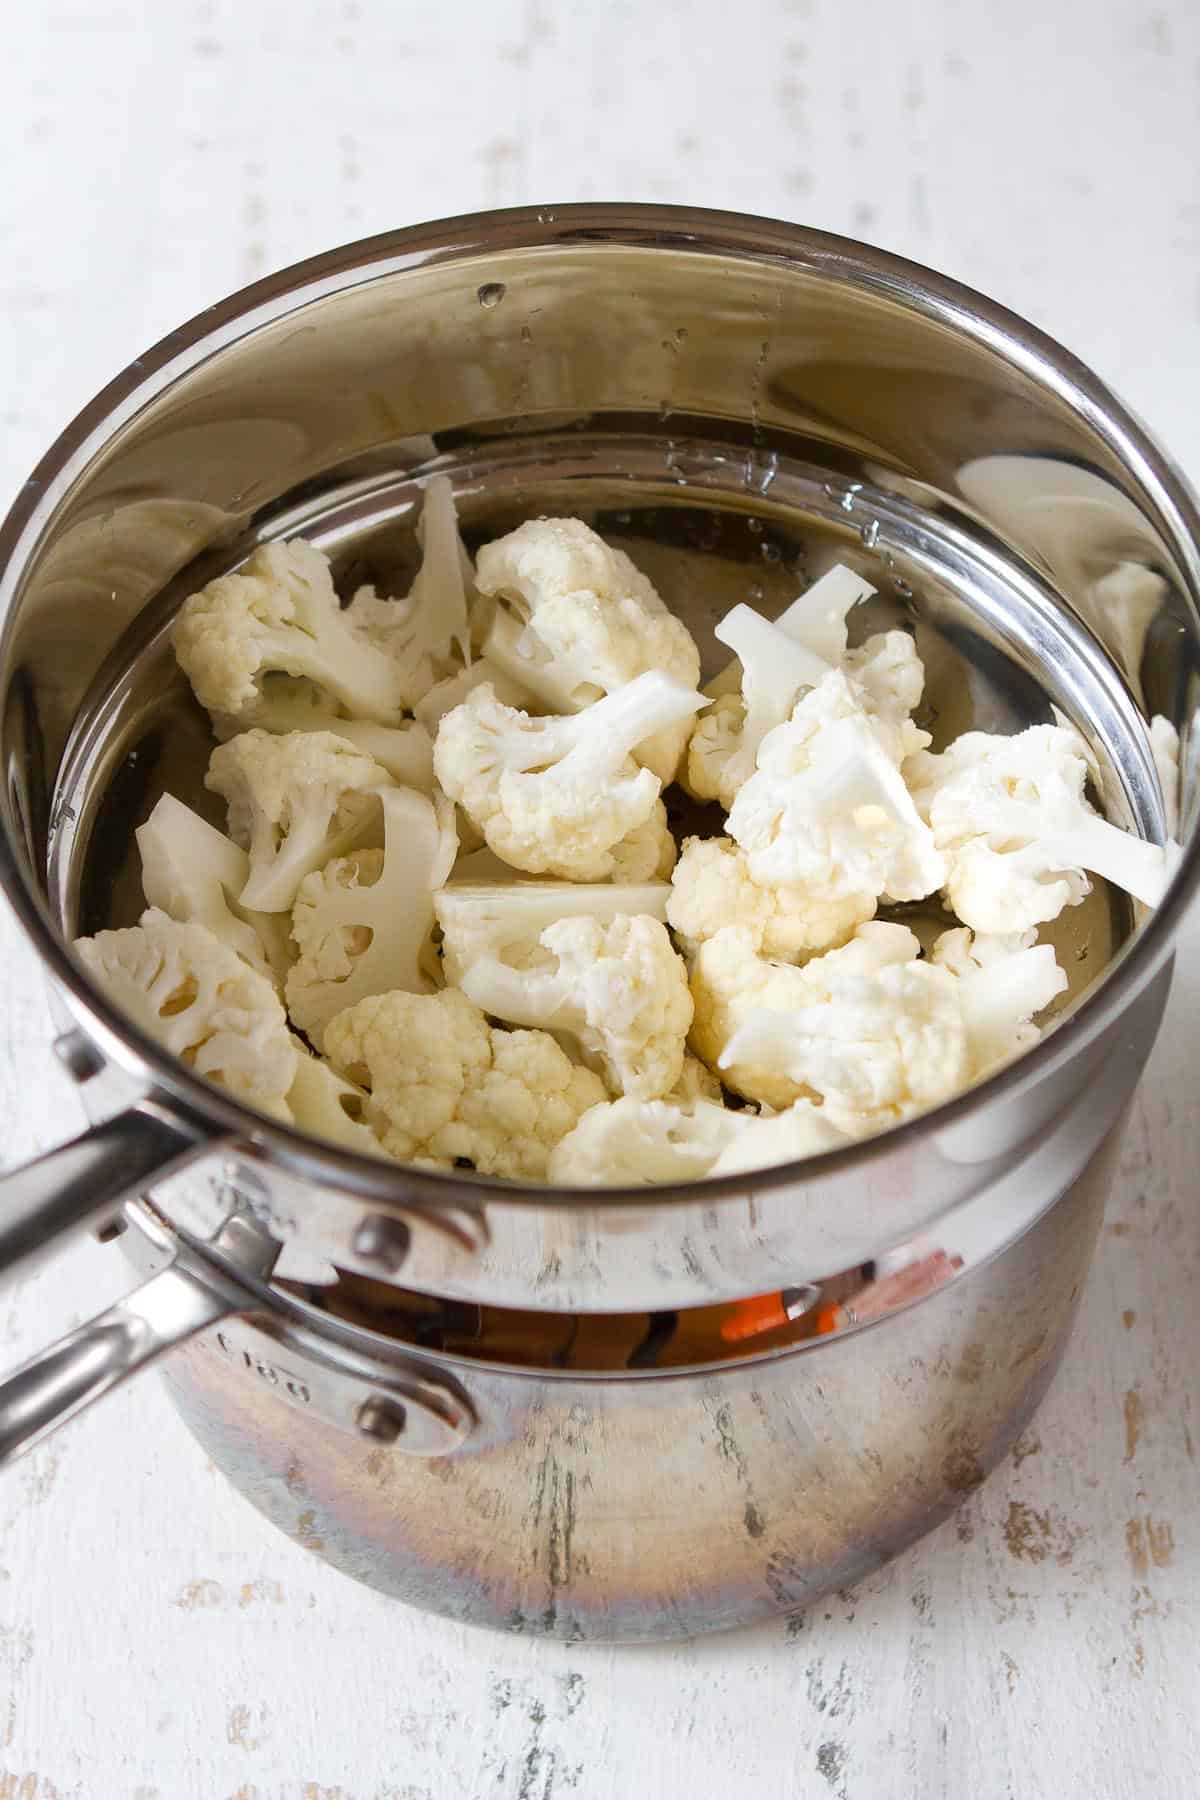 Raw cauliflower florets in a steamer insert.